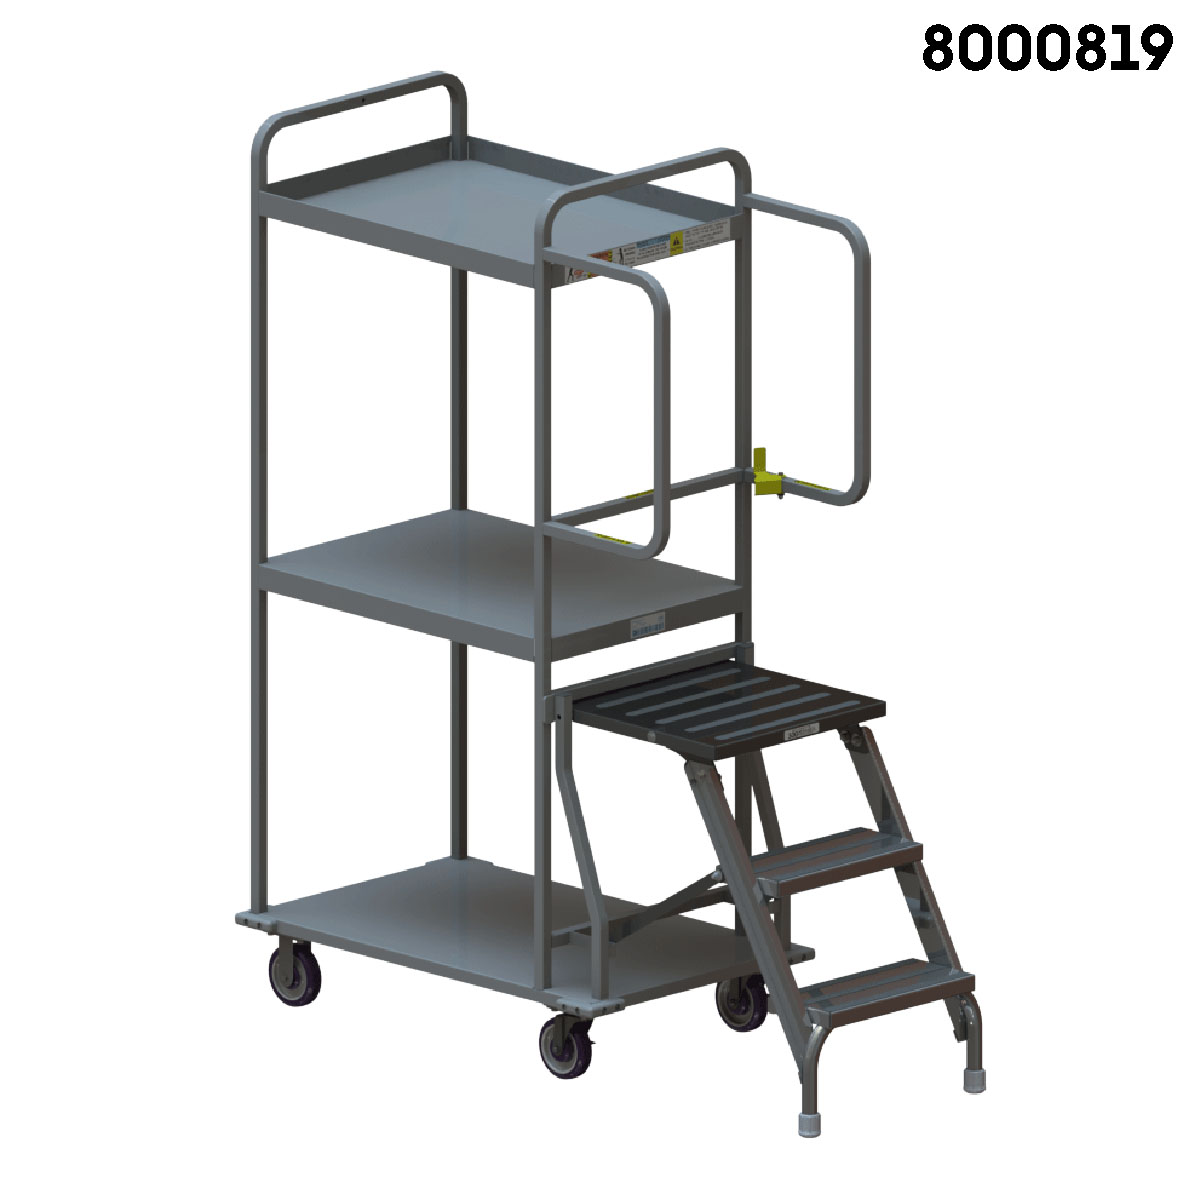 3 Shelf Ladder Cart, 3 Shelf Stair Cart, Ladder Picking Cart industrial cart material handling